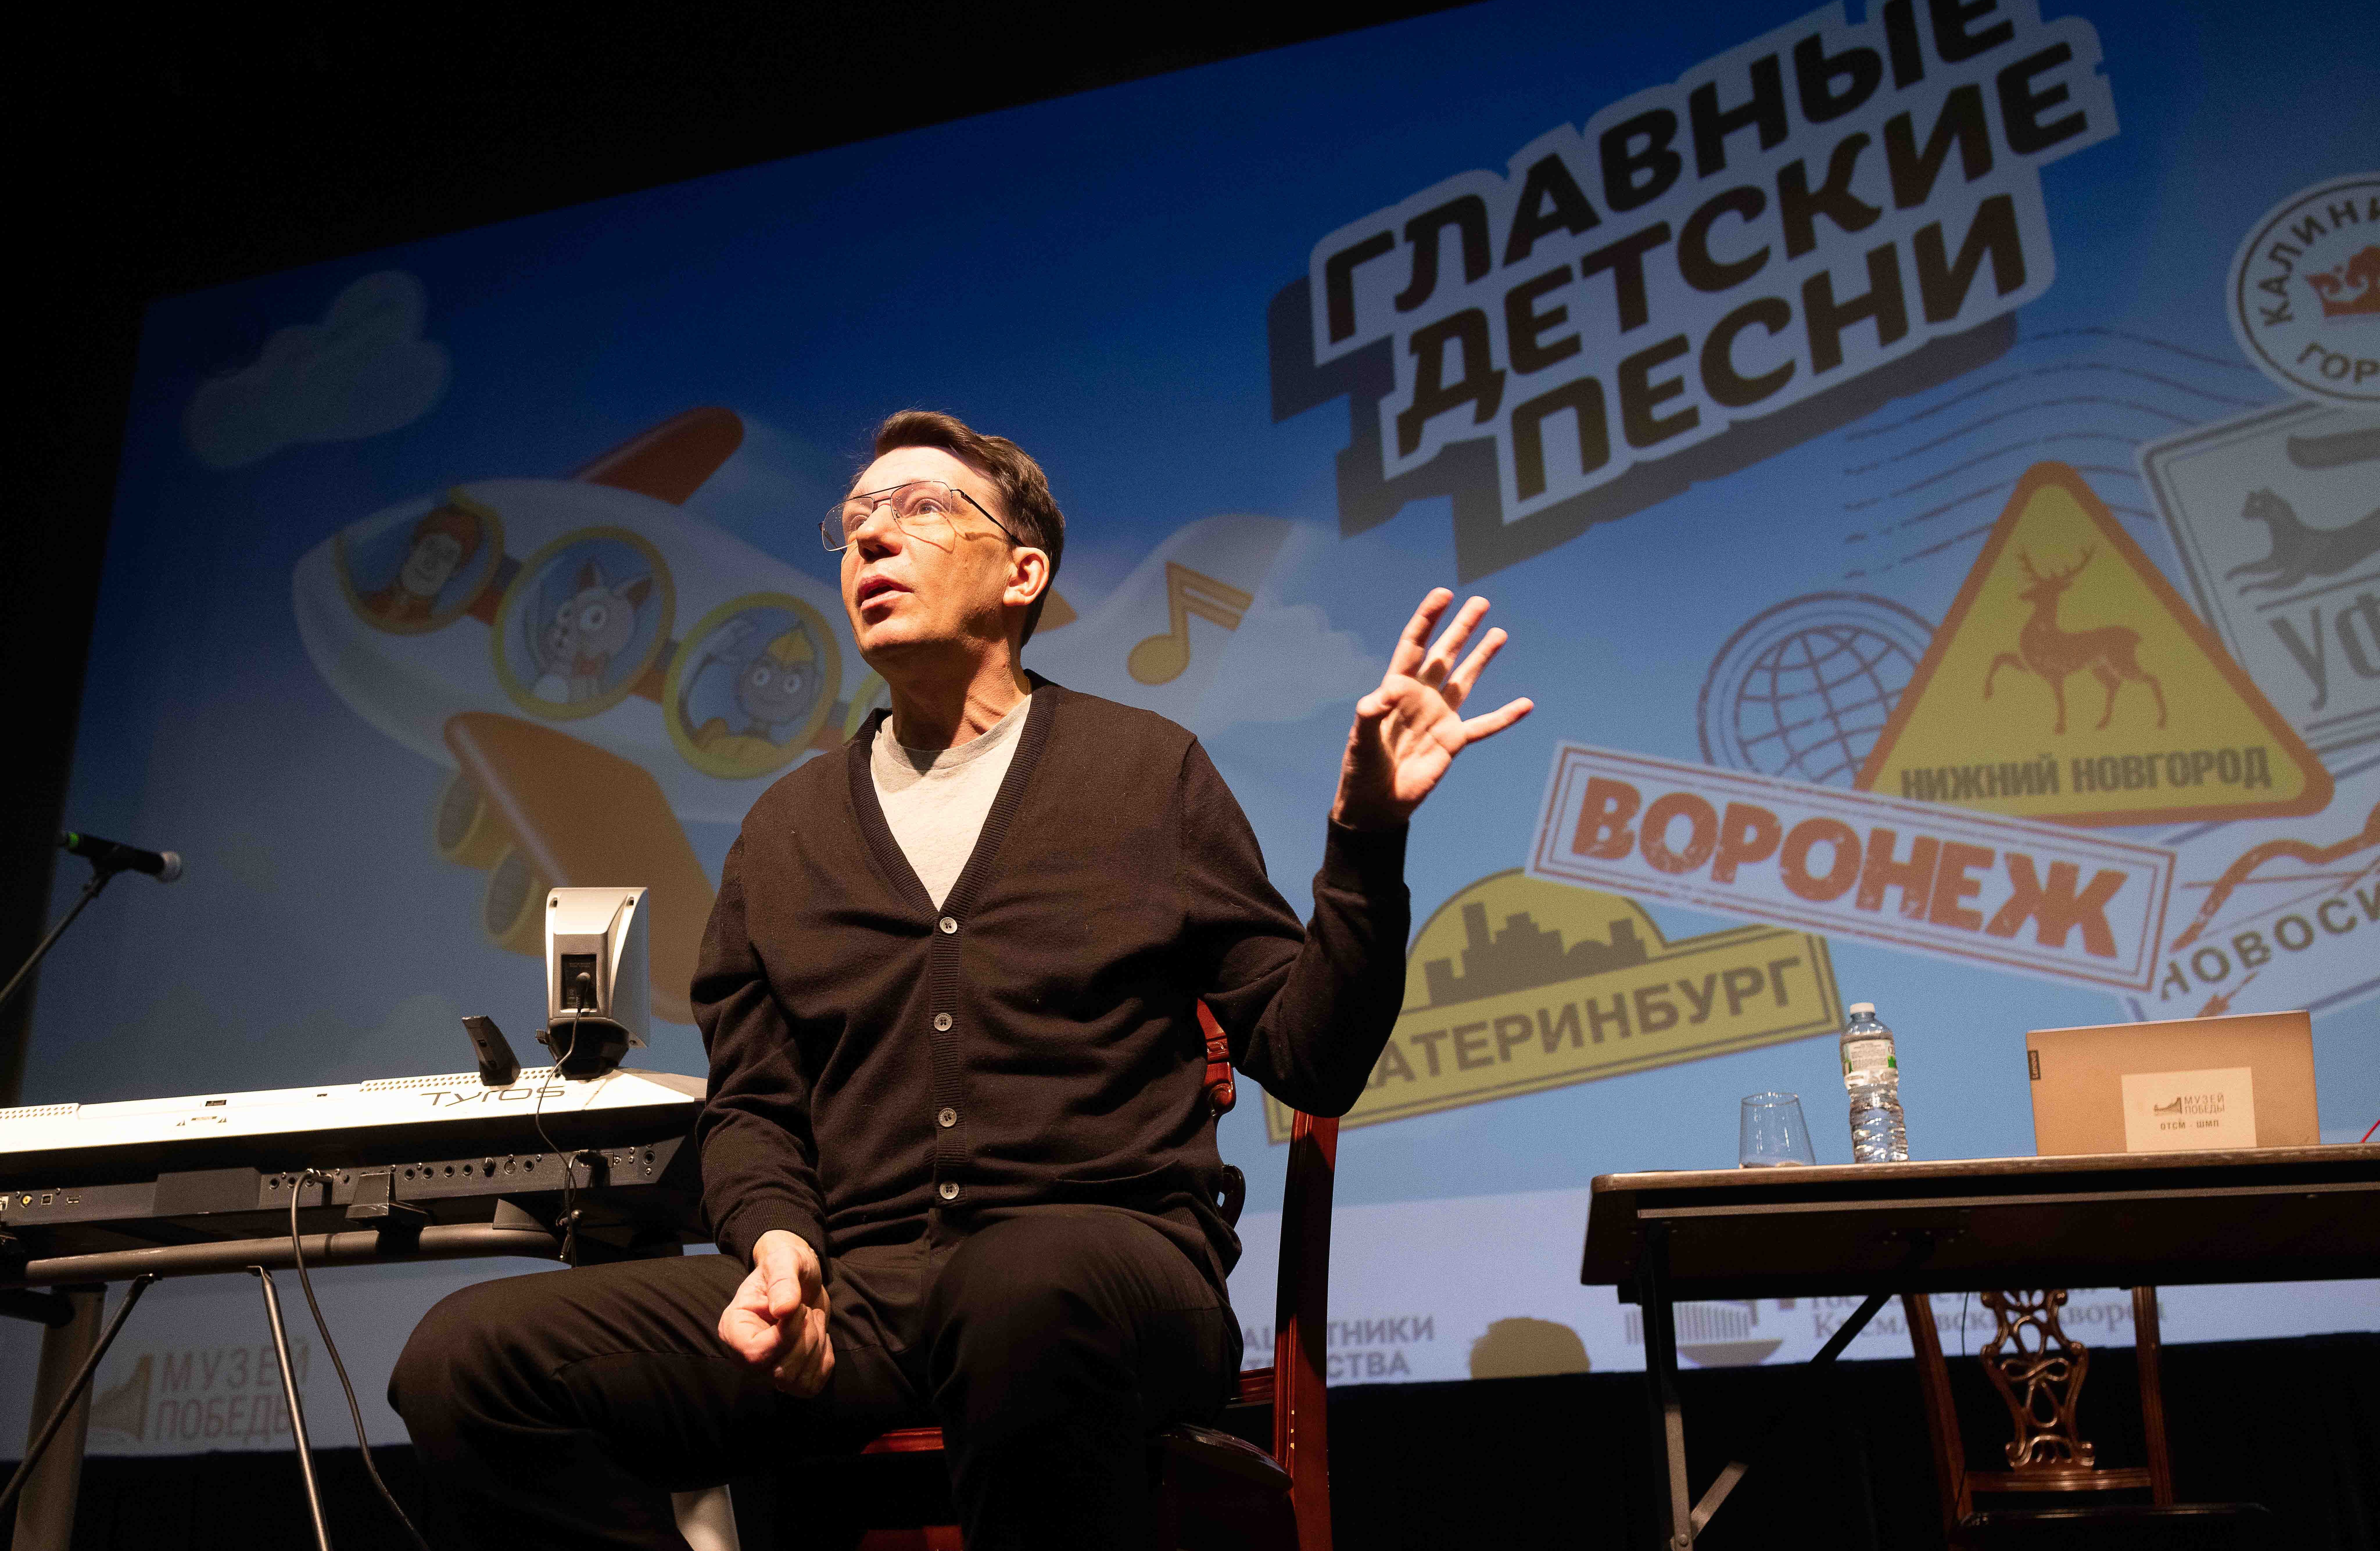 Виталий Осошник: «Проект «Главные детские песни» стал народным»